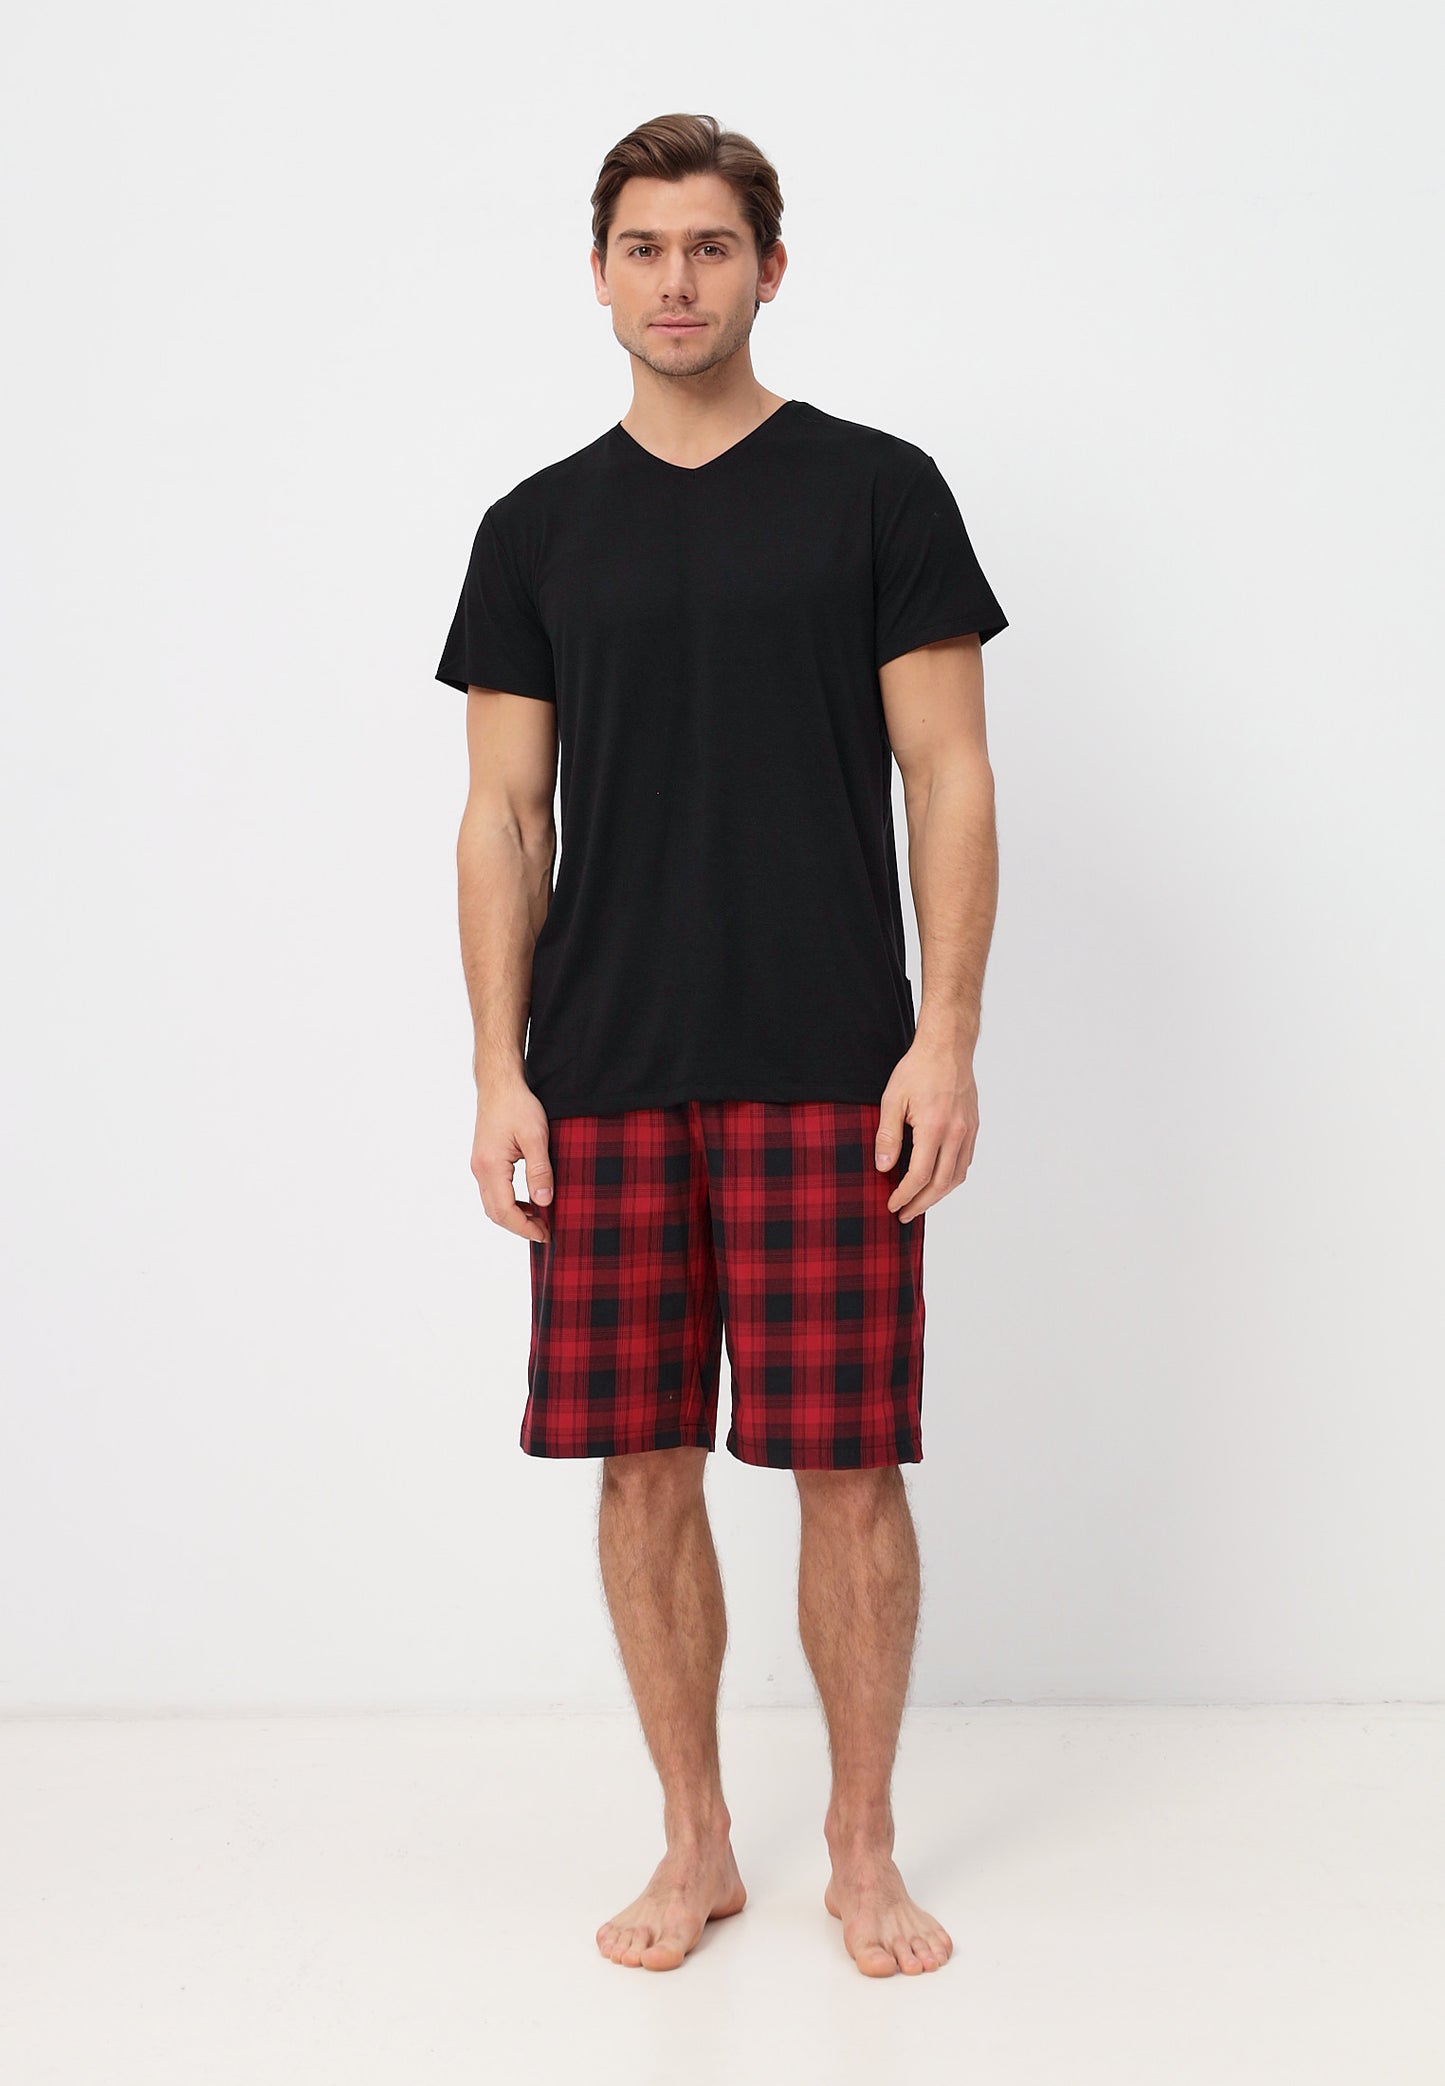 Zweiteiliges Set Herren Pyjama Set - Kurzarm Shirt und kurze Karierte Pyjamahose aus Baumwolle LMS-6438 Schwarz/Rot